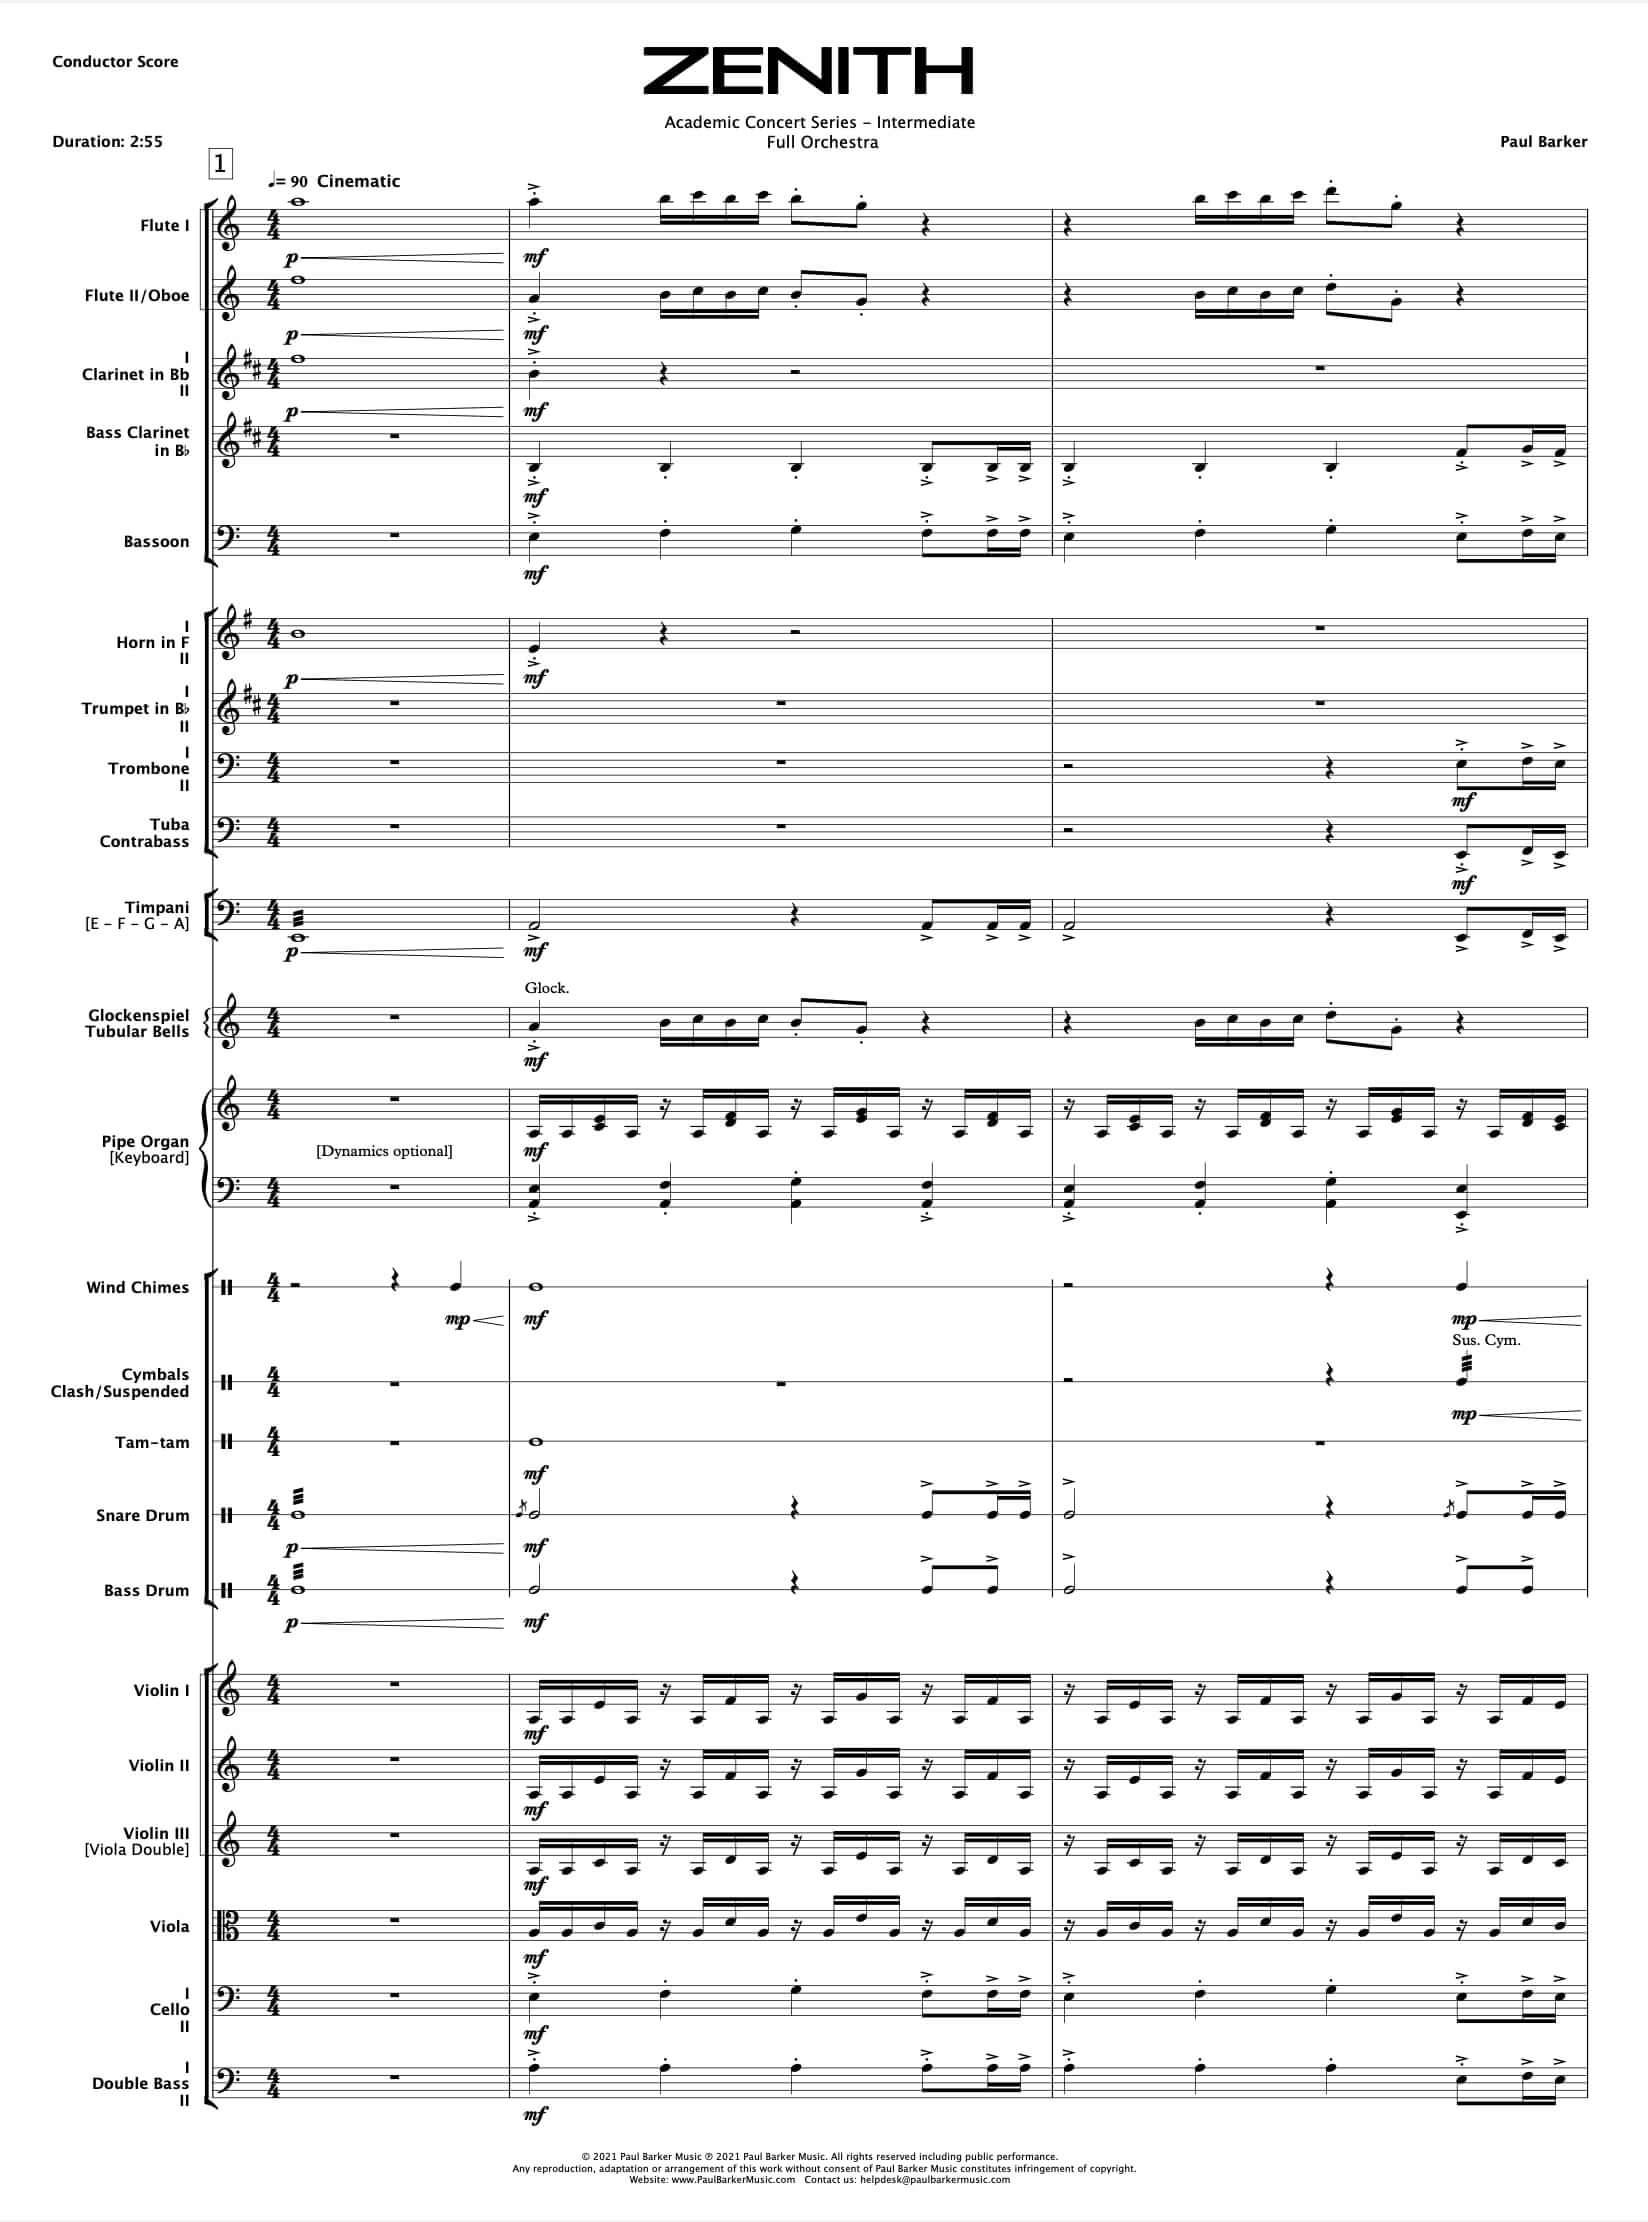 Zenith [Full Orchestra] - Paul Barker Music 